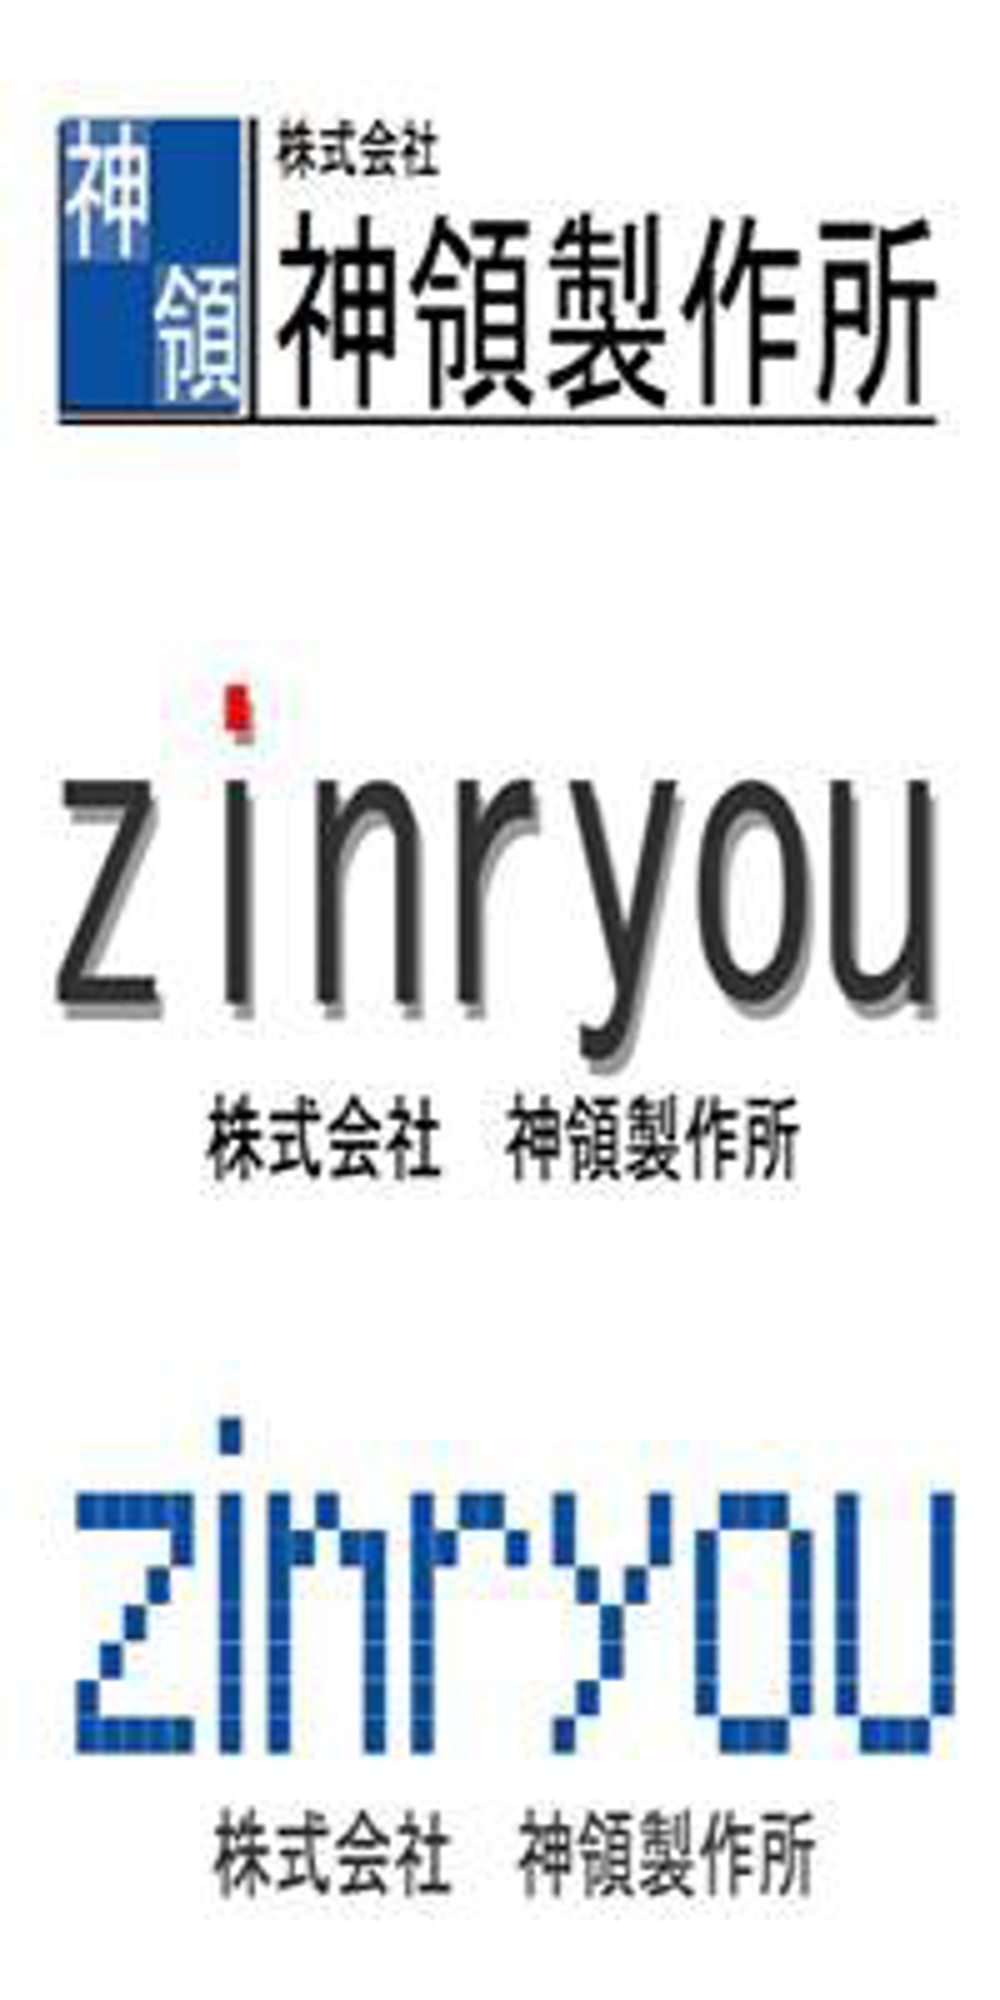 zinryou_002.jpg